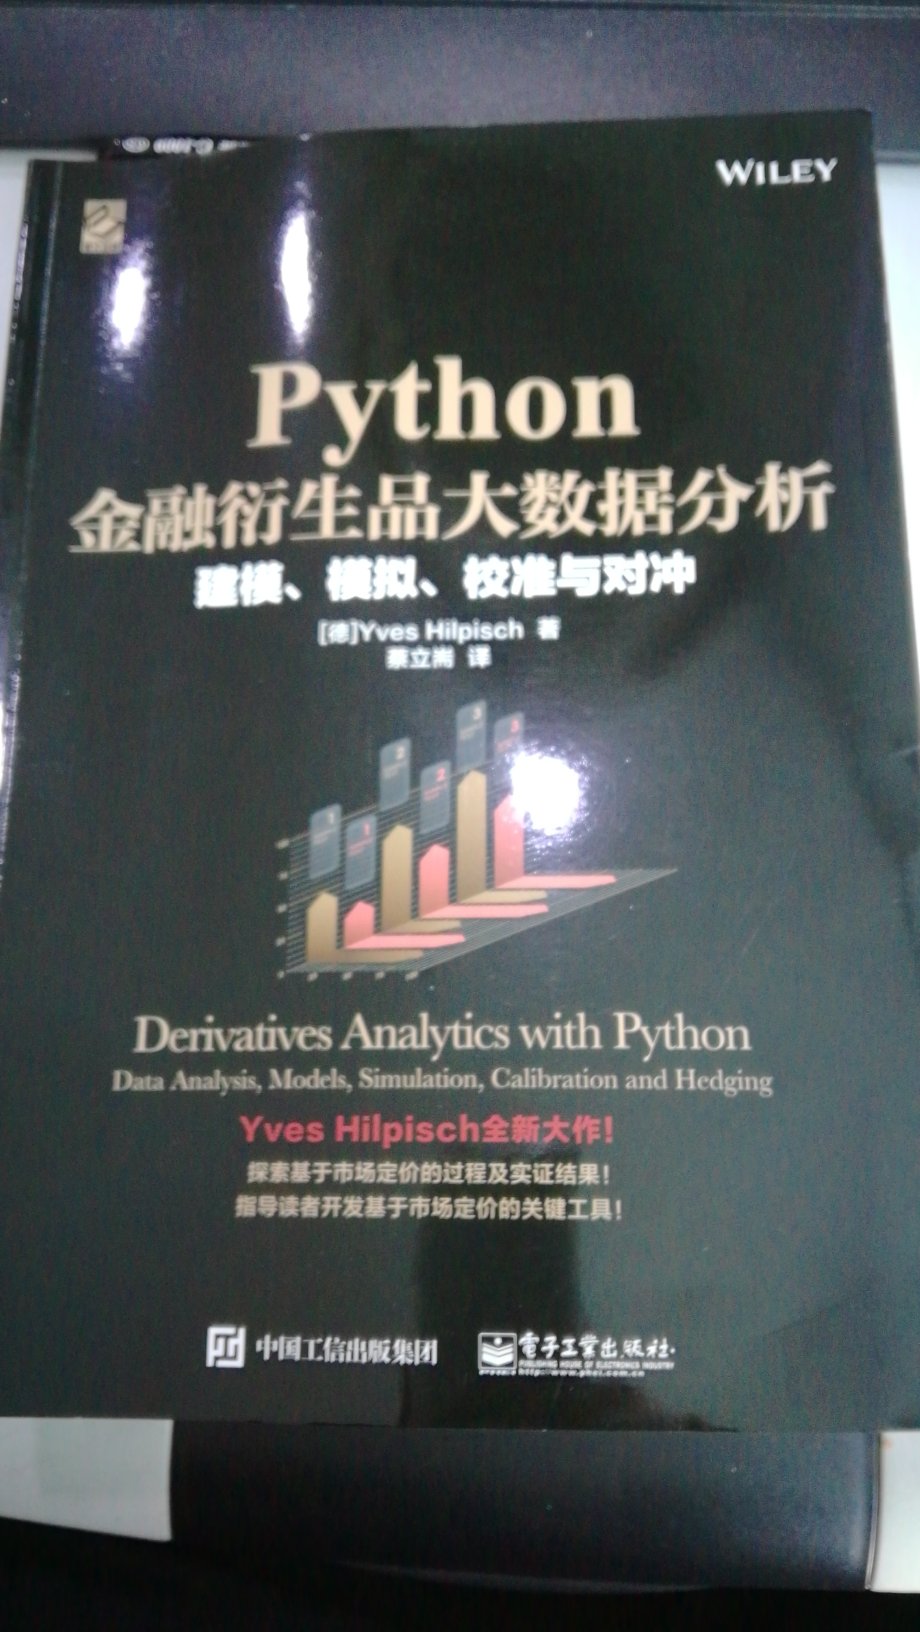 很不错的一本大数据书籍，案例丰富，解释详尽，值得拥有。